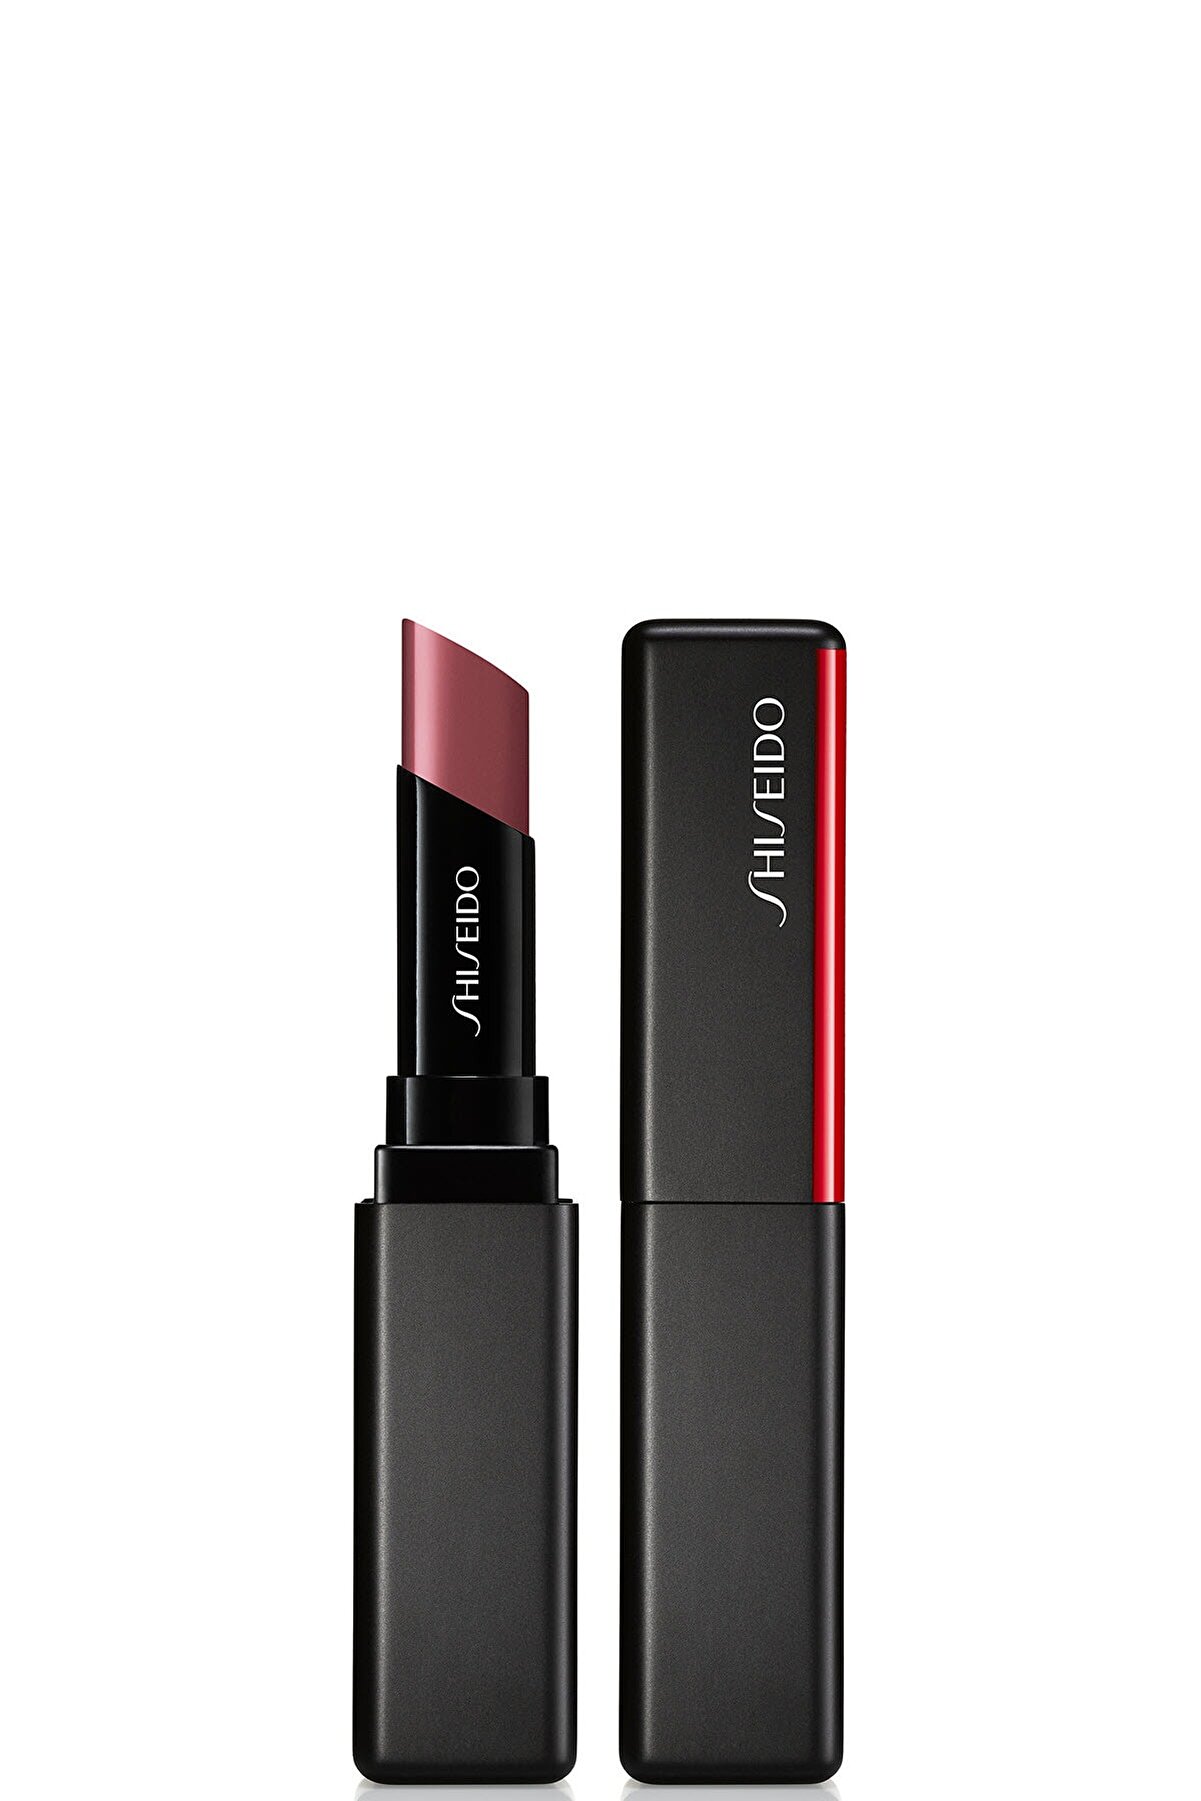 Shiseido Kalıcı Nemlendirici Ruj - SMK Visionairy Gel Lipstick 203 729238148031